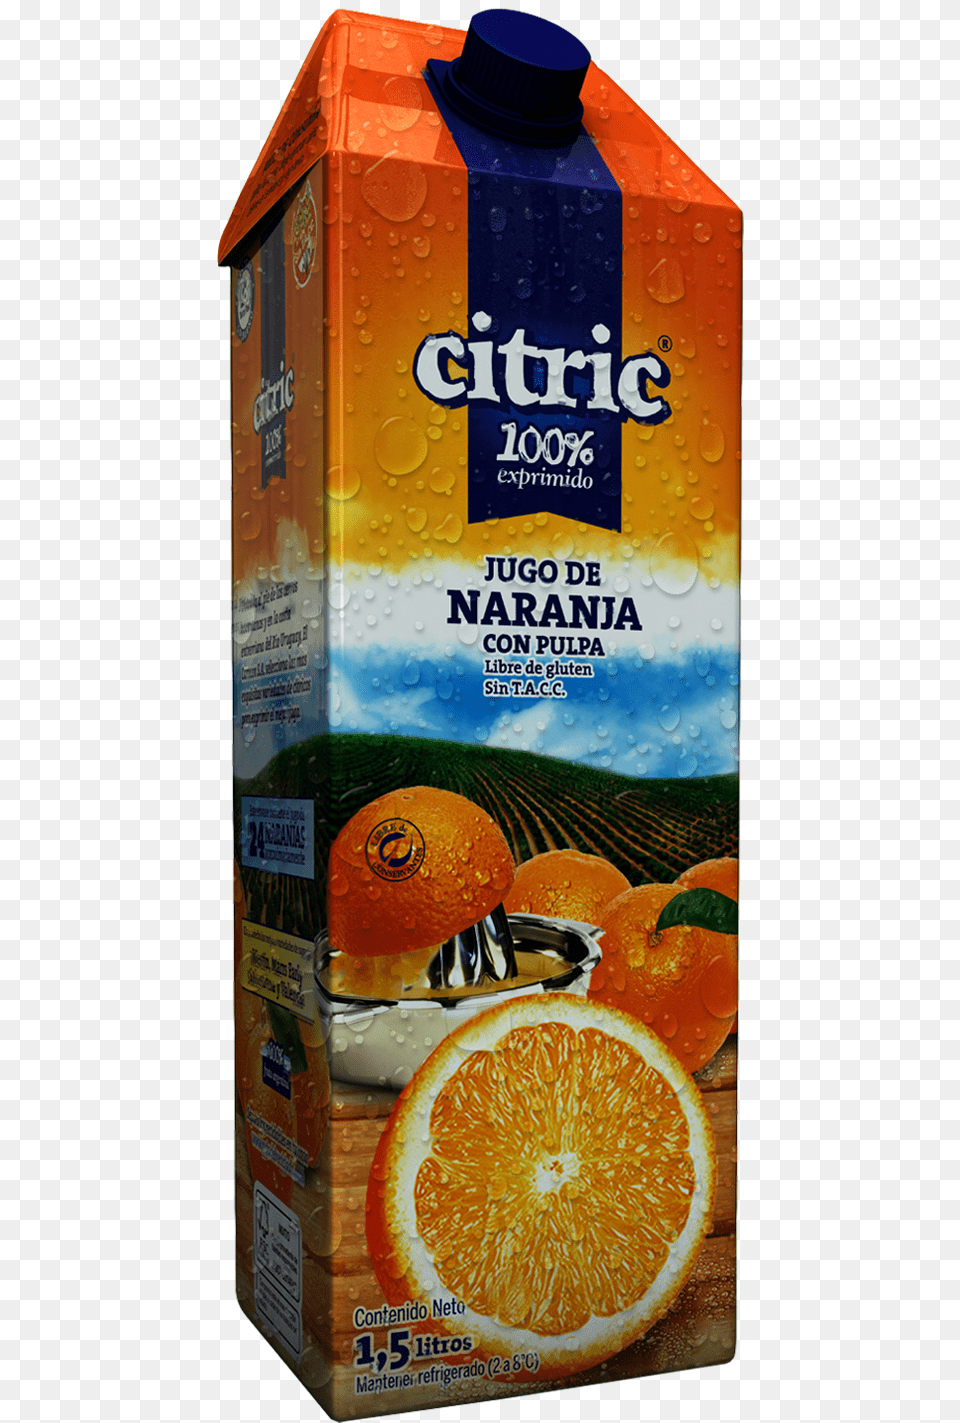 Jugo Citric 100 Naranja Citric, Beverage, Juice, Citrus Fruit, Food Png Image